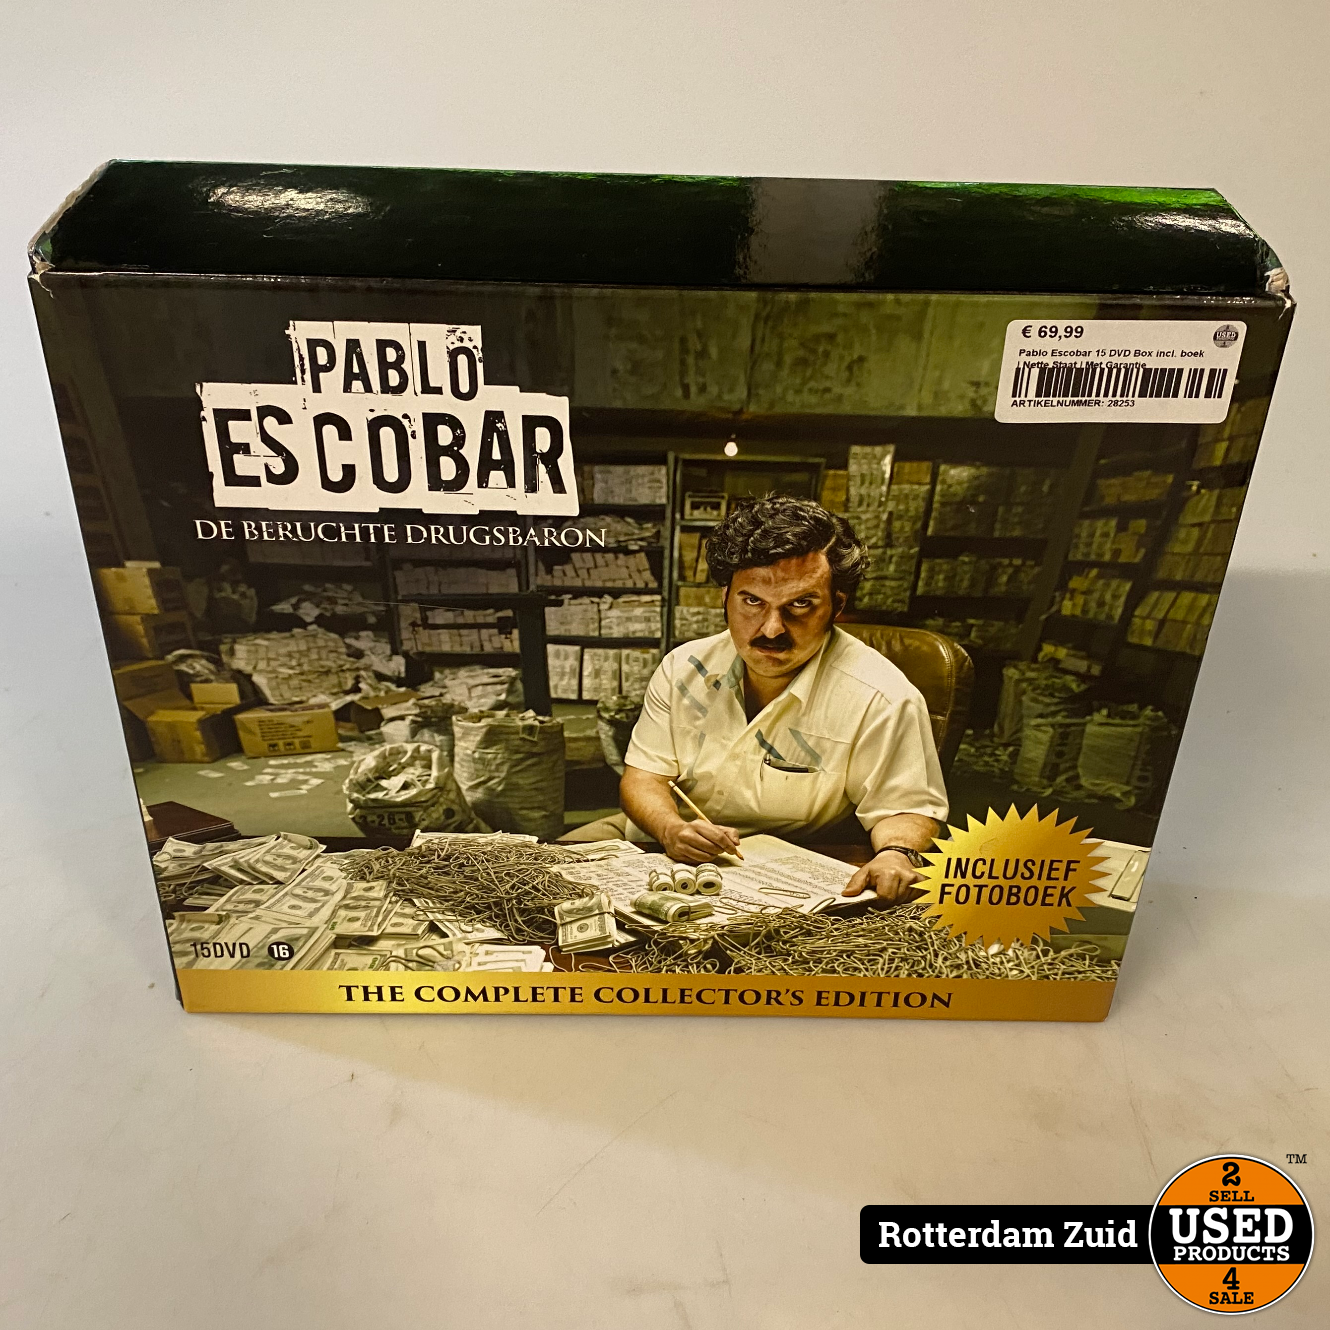 Weggooien gouden Het strand Pablo Escobar 15 DVD Box incl. boek | Nette Staat | Met Garantie - Used  Products Rotterdam Zuid